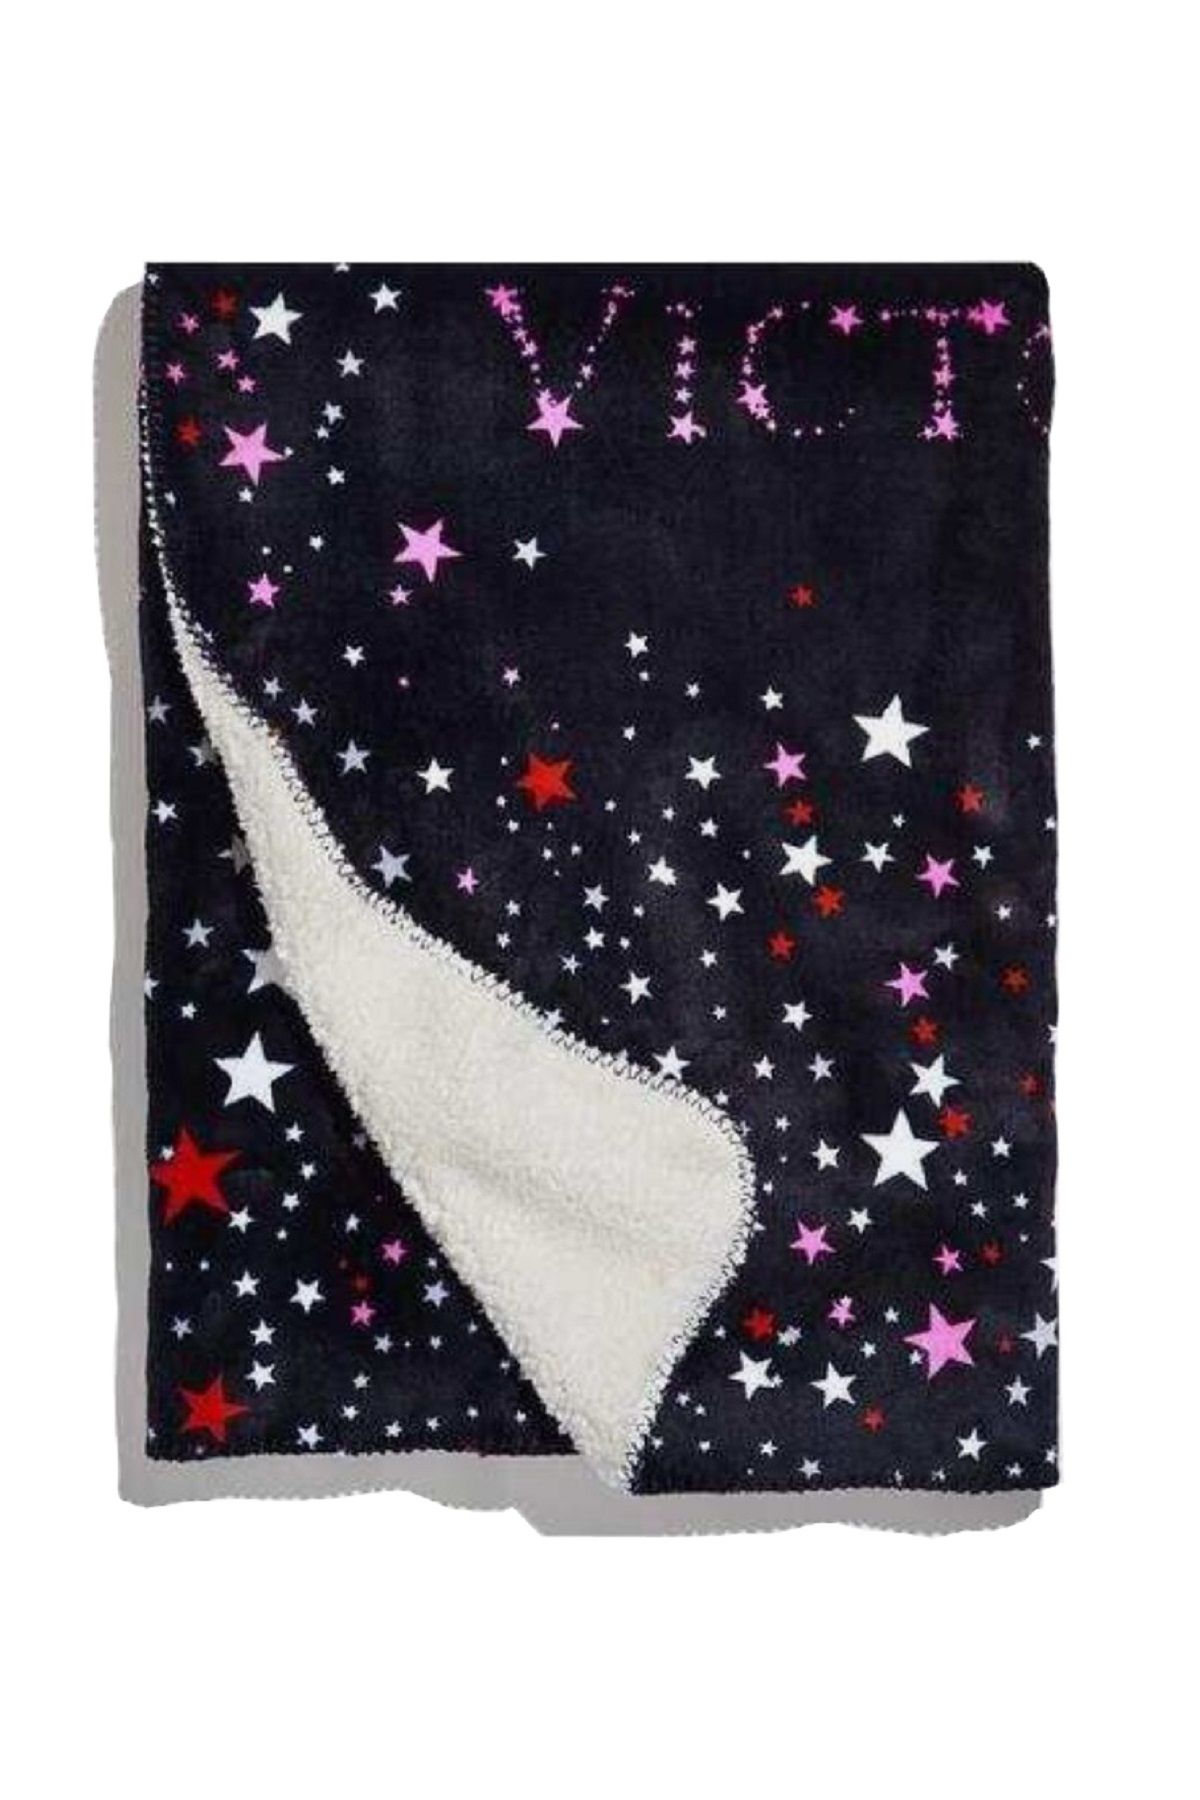 Victoria's Secret Sherpa Blanket Yıldız Desenli Tek Kişilik Battaniye